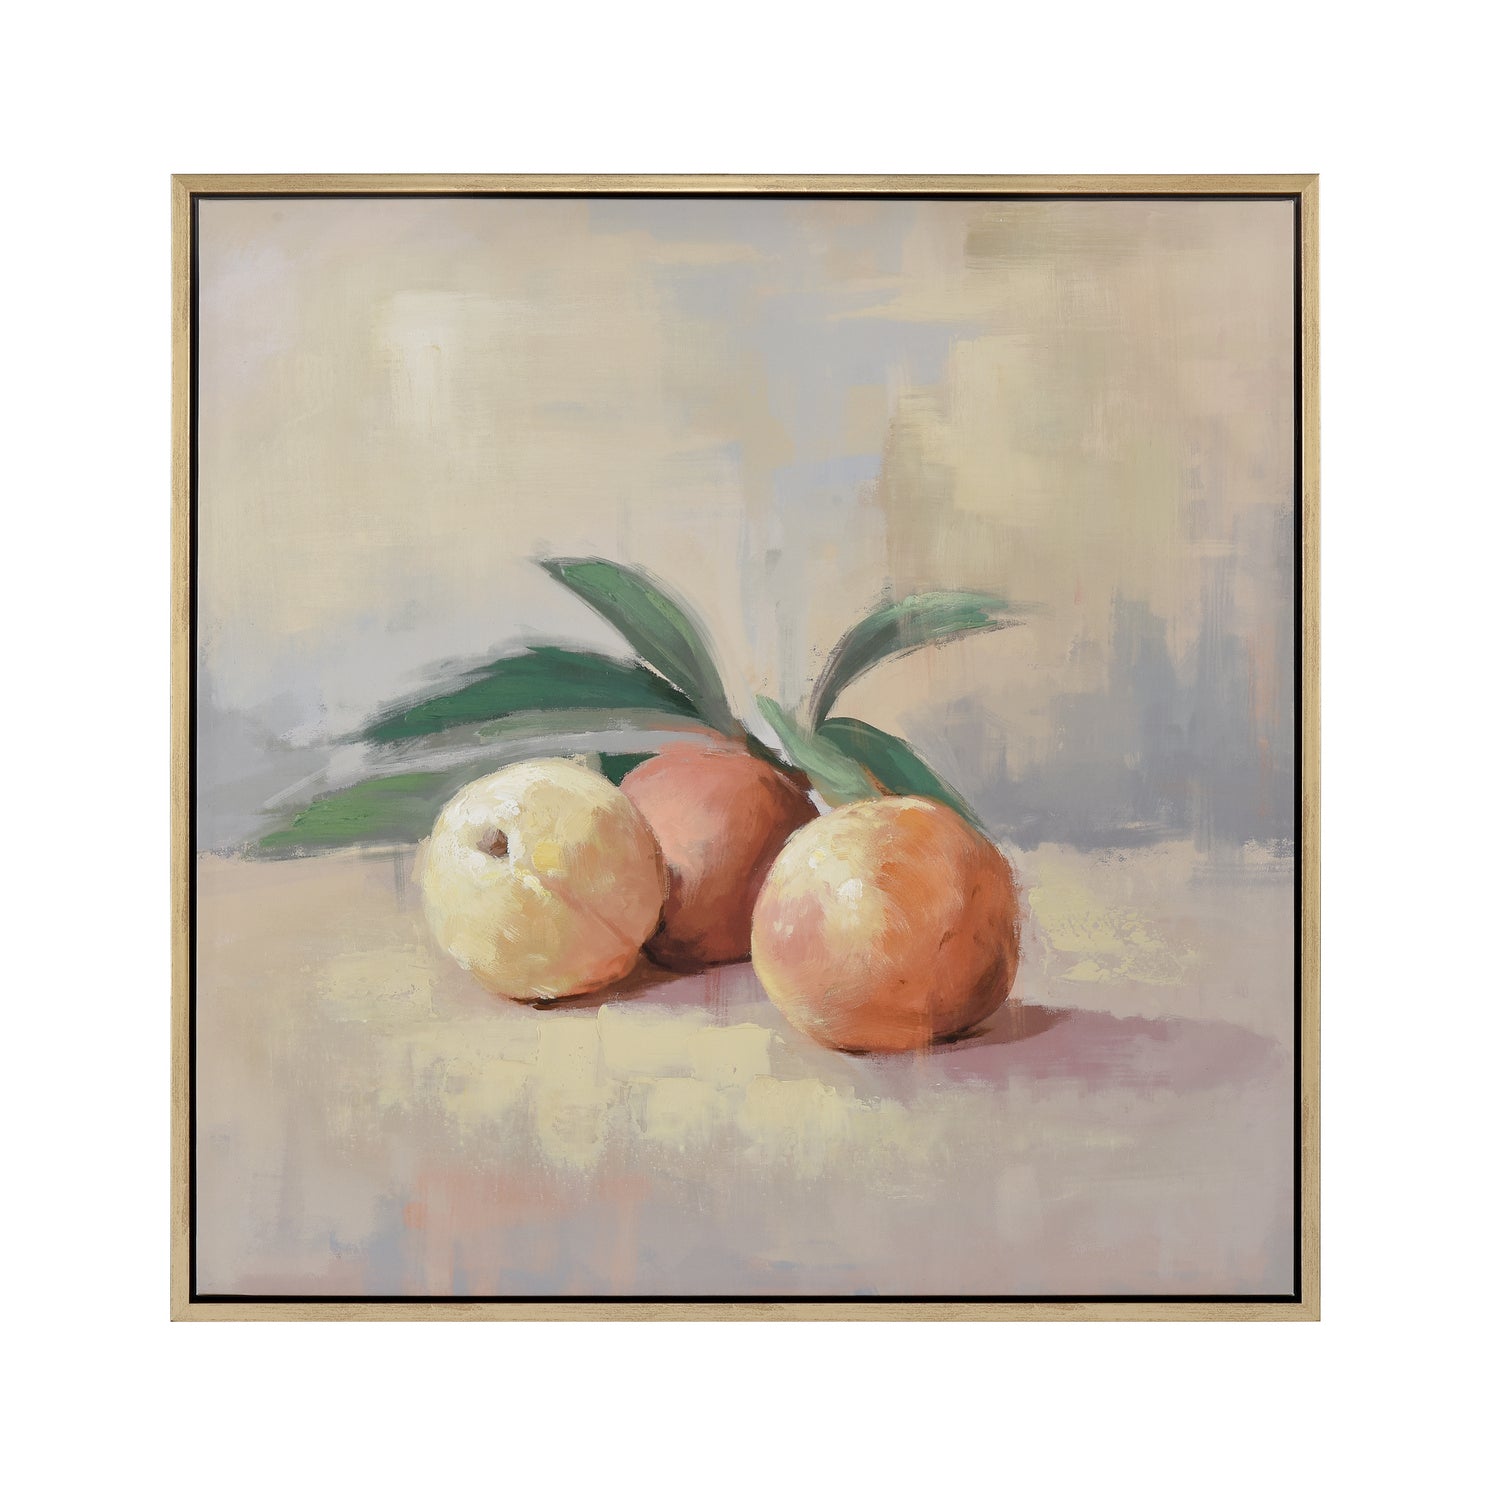 ELK Home - S0026-10619 - Framed Wall Art - Peach Still Life - Cream